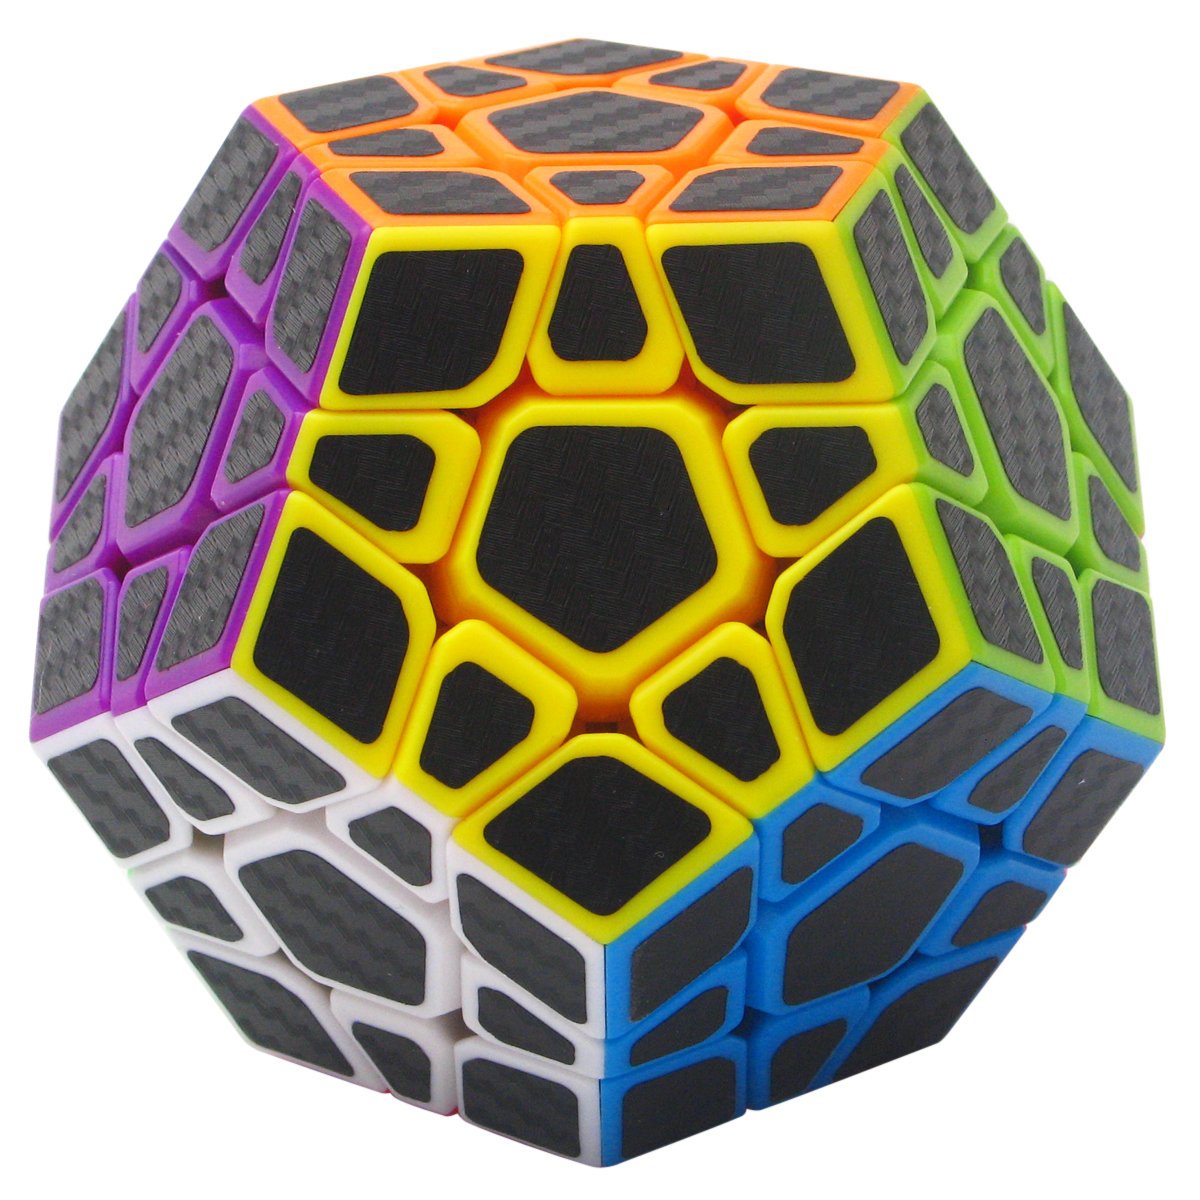 grand escompte Coolzon 3x3 Megaminx Puzzle Cube Nouveau